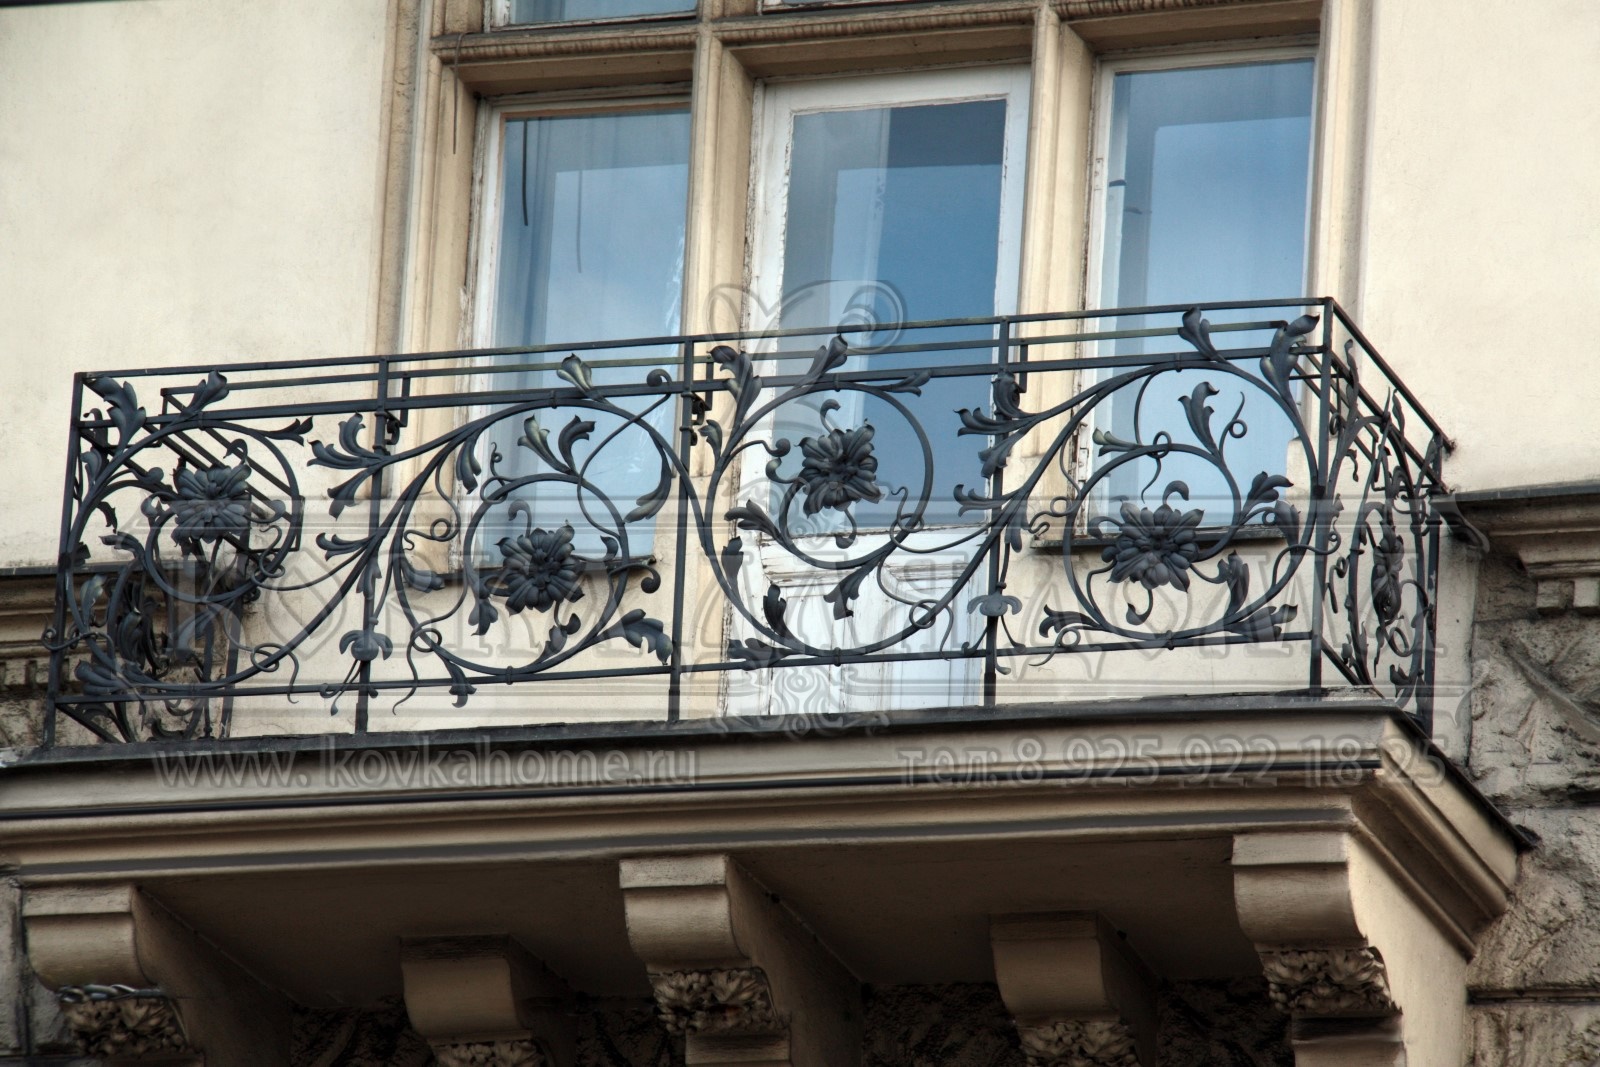 Ограждение балкона кованое с декоративными художественными элементами в виде цветов ручной ковки.